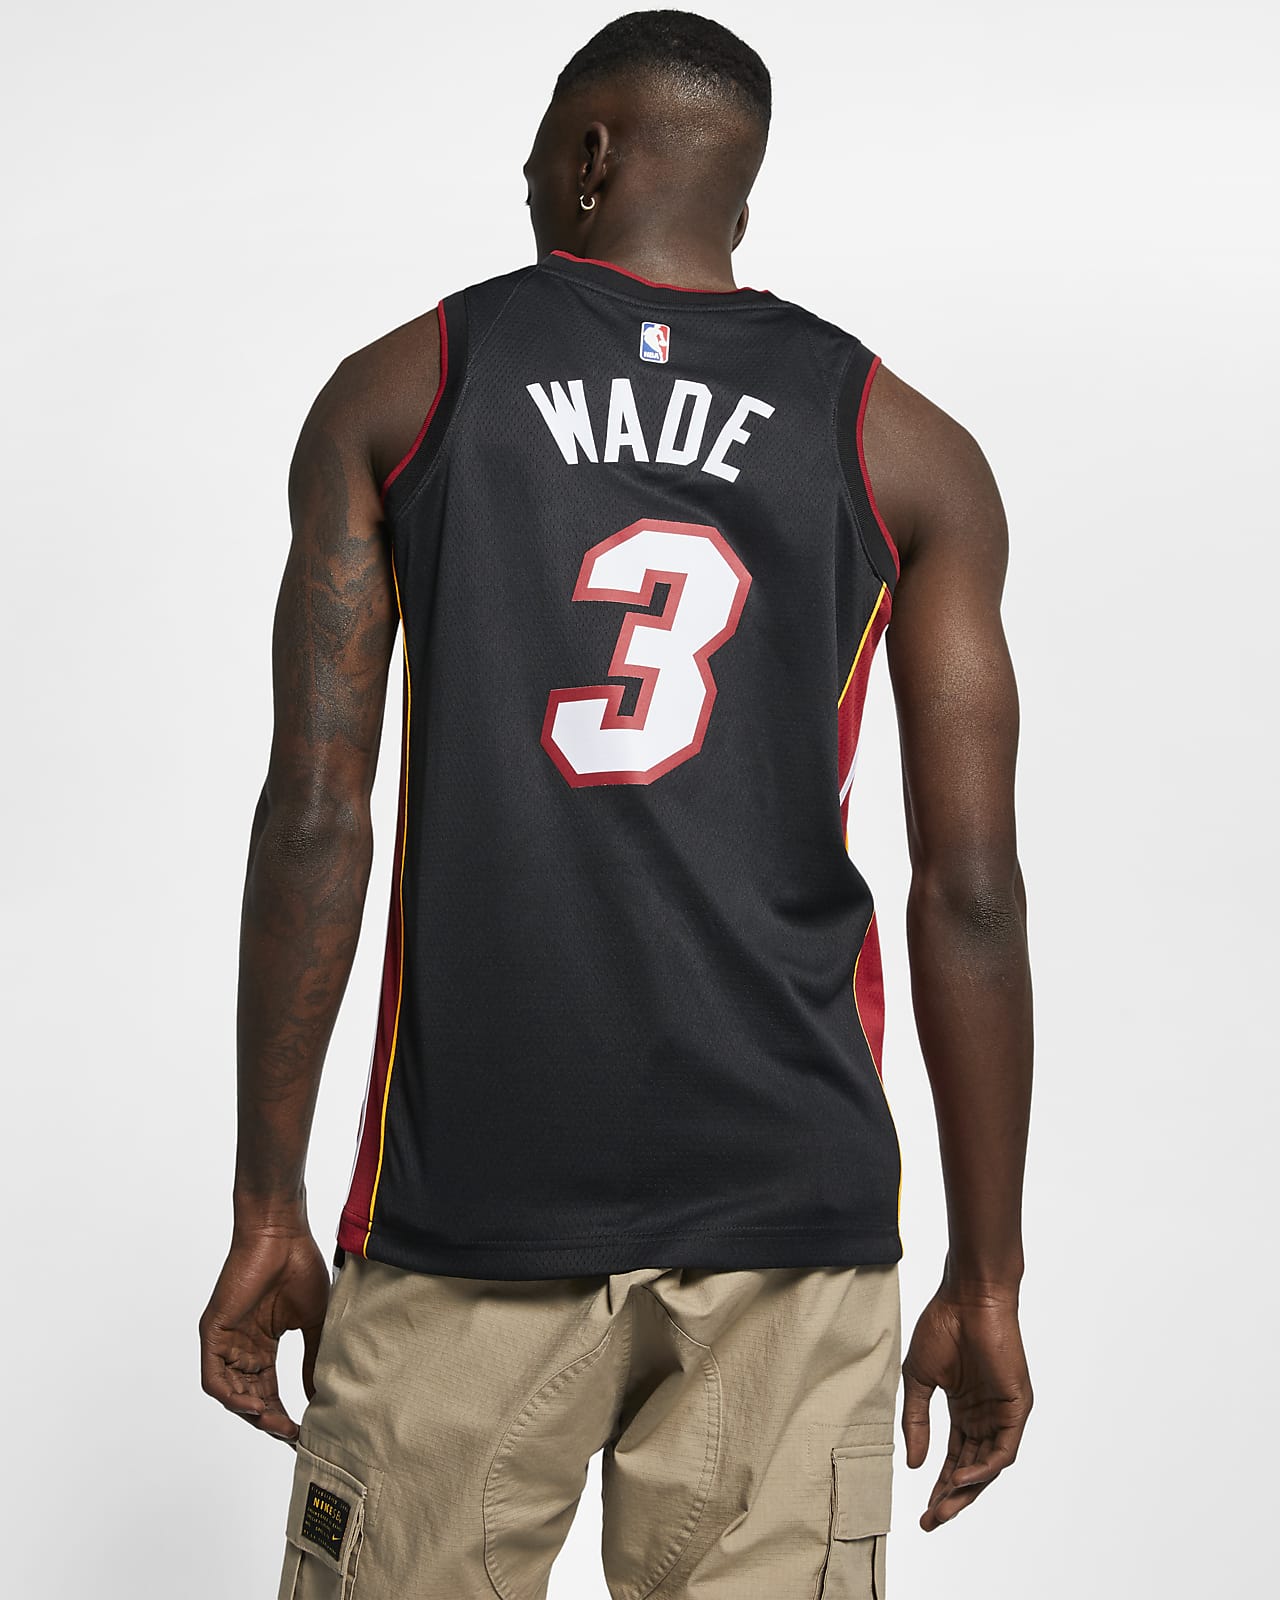 Männer Jersey Miami Heat # 3 Dwyane Wade Basketball-T-Shirt Jersey Männer Casual Lauf Schnell trocknendes T-Shirt lose Kurze Ärmel